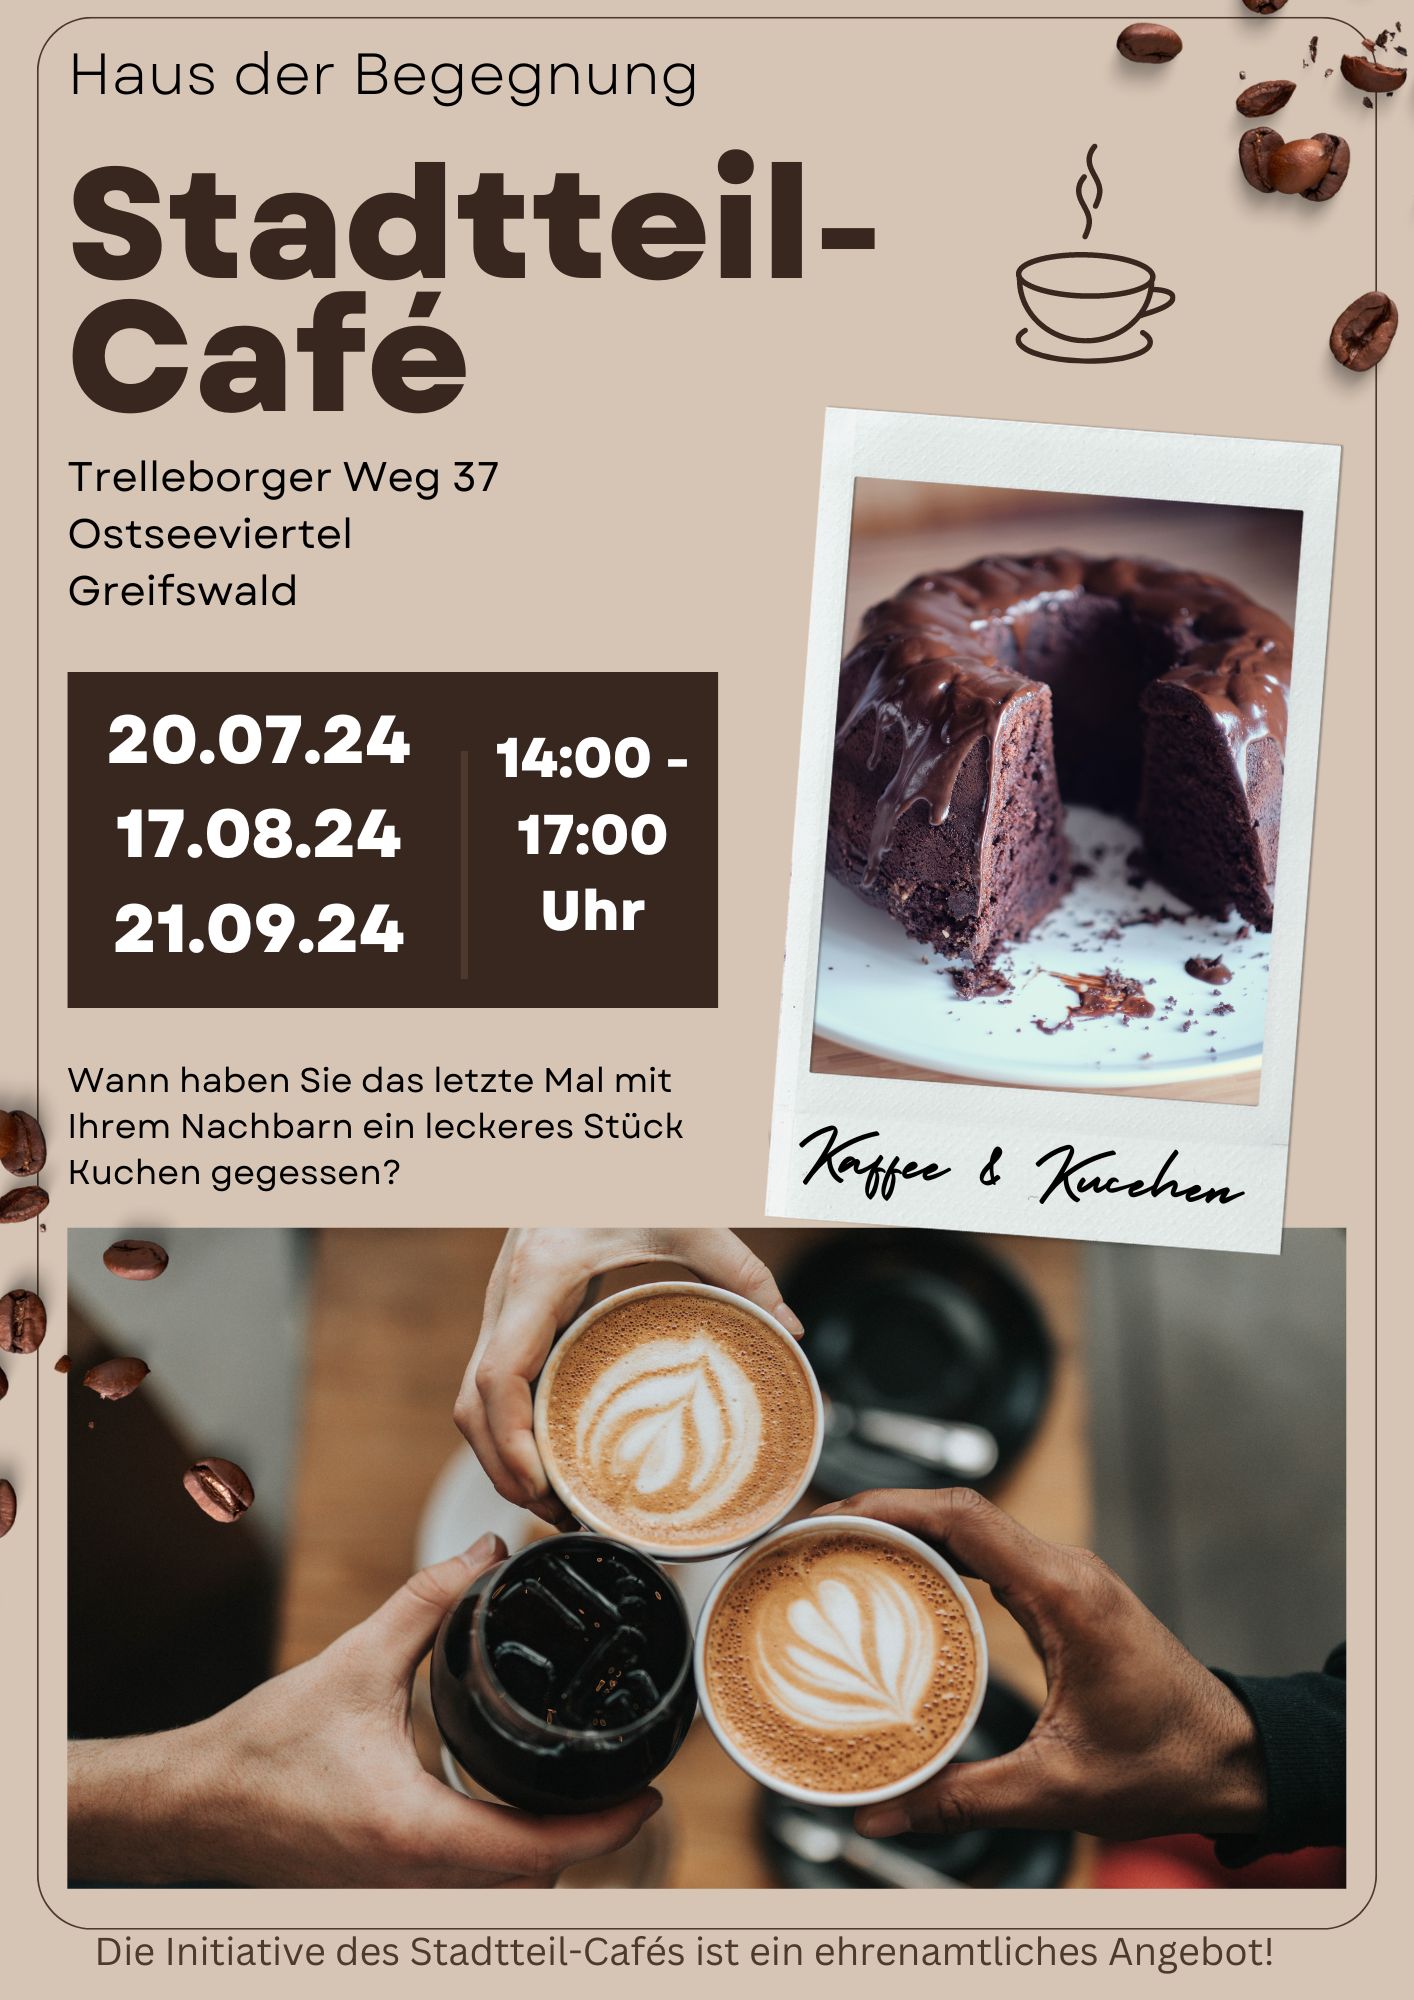 Stadtteil-Café Ostseeviertel an den Samstagen, 20.07., 17.08. und 21.09. jeweils von 14:00 Uhr bis 17:00 Uhr im Haus der Begegnung im Trelleborger Weg 37